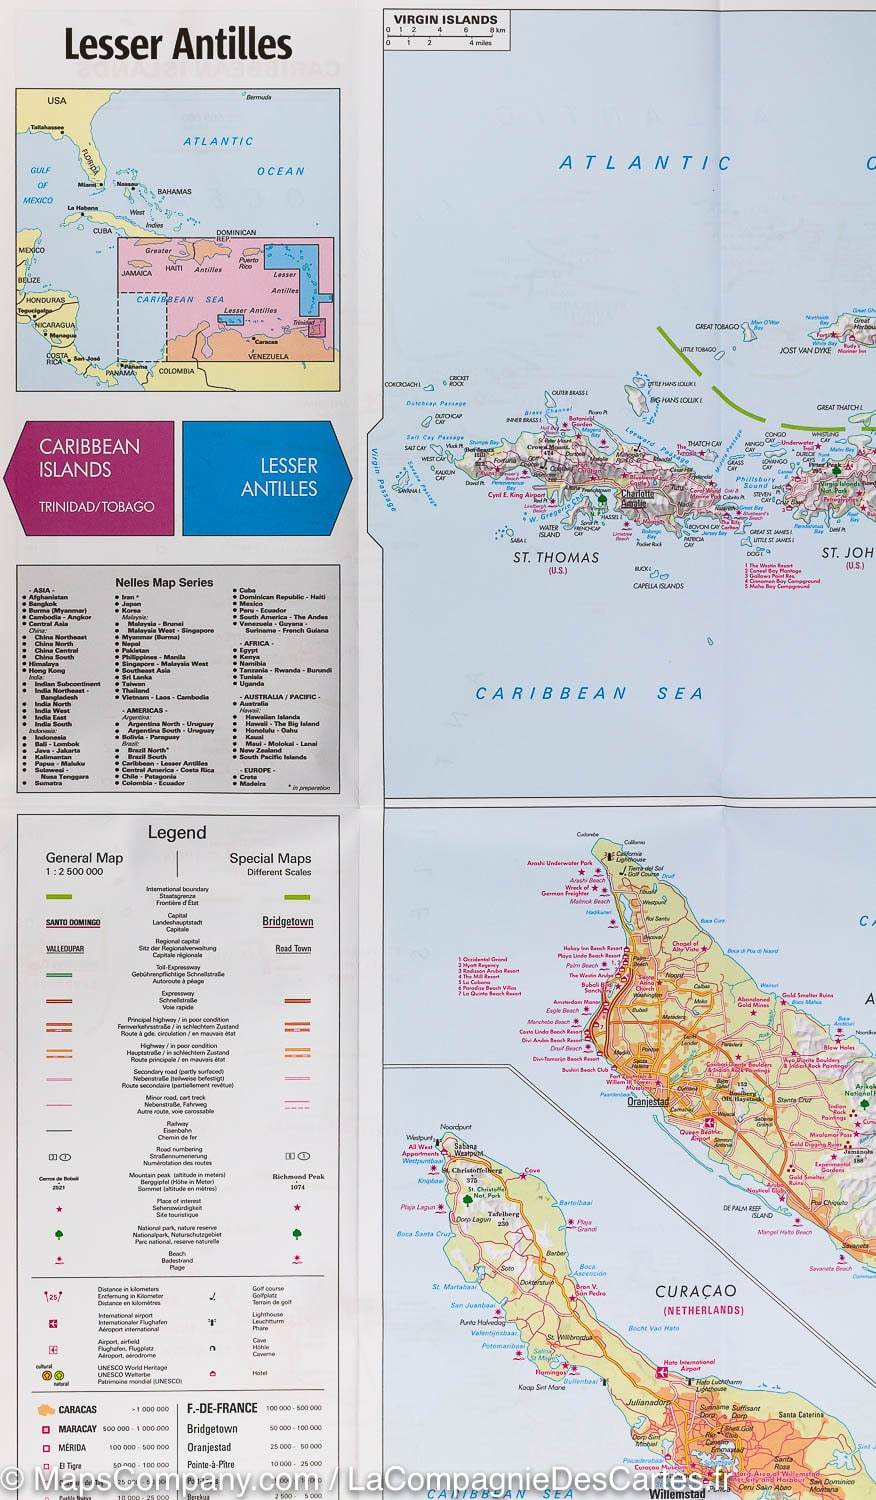 Carte imperméable - Petites Antilles | Nelles Map carte pliée Nelles Verlag 